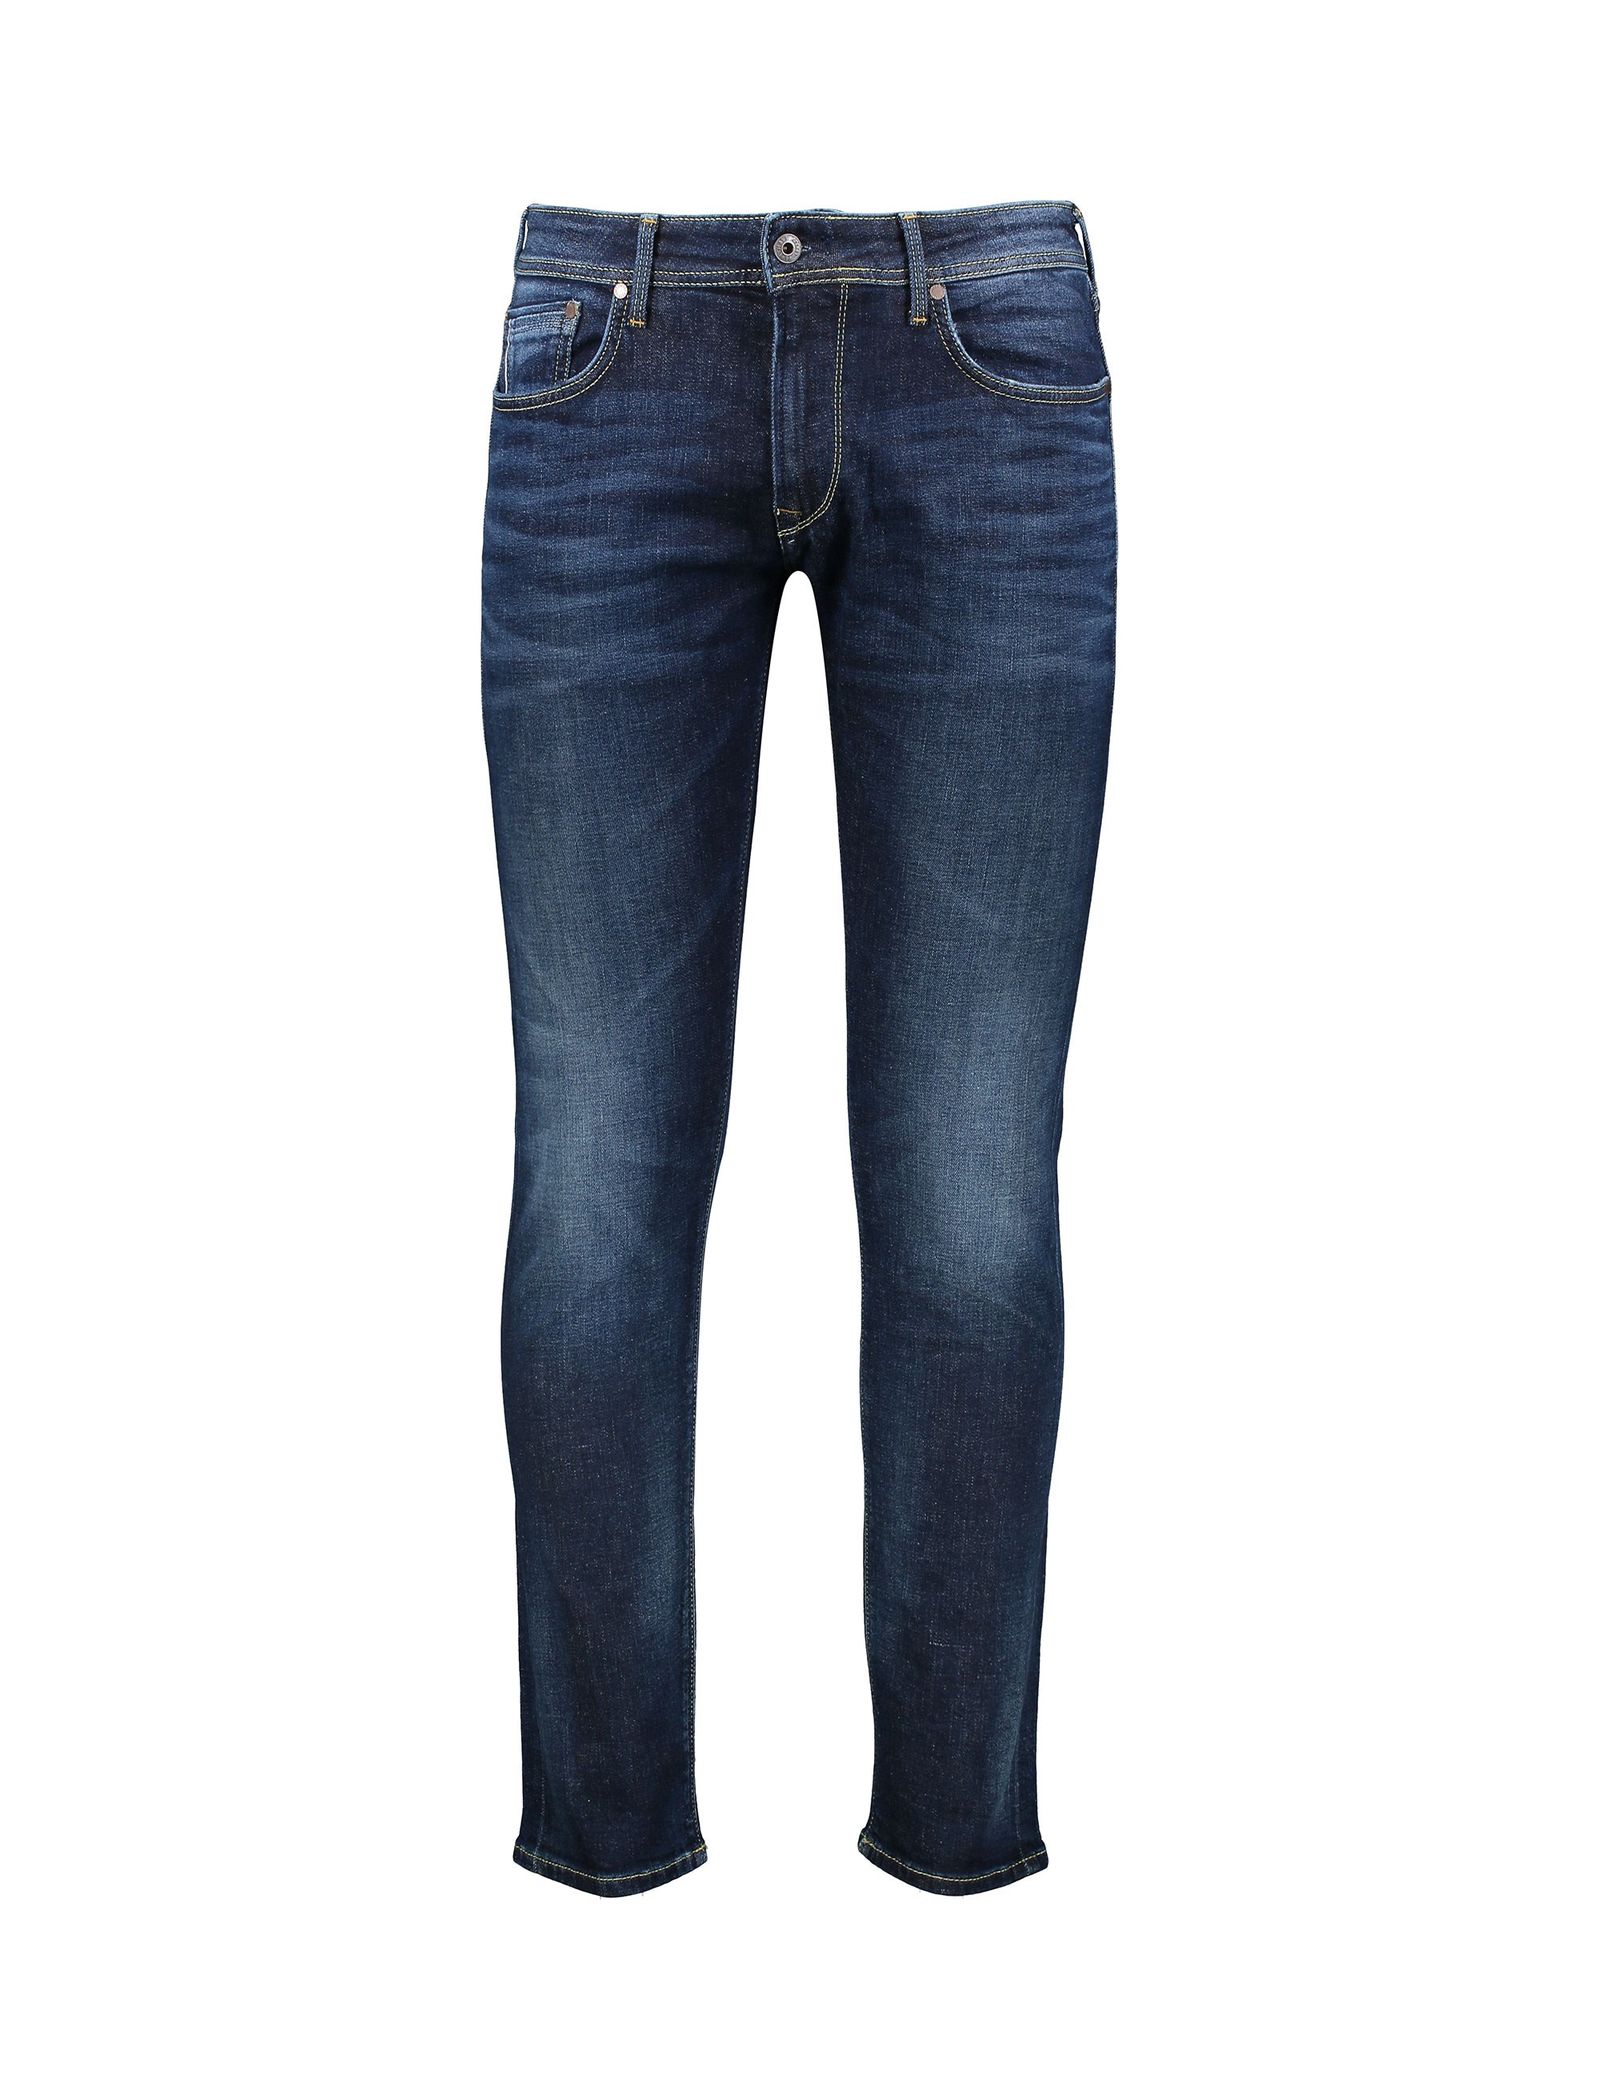 شلوار جین راسته مردانه - پپه جینز - سرمه اي - 1